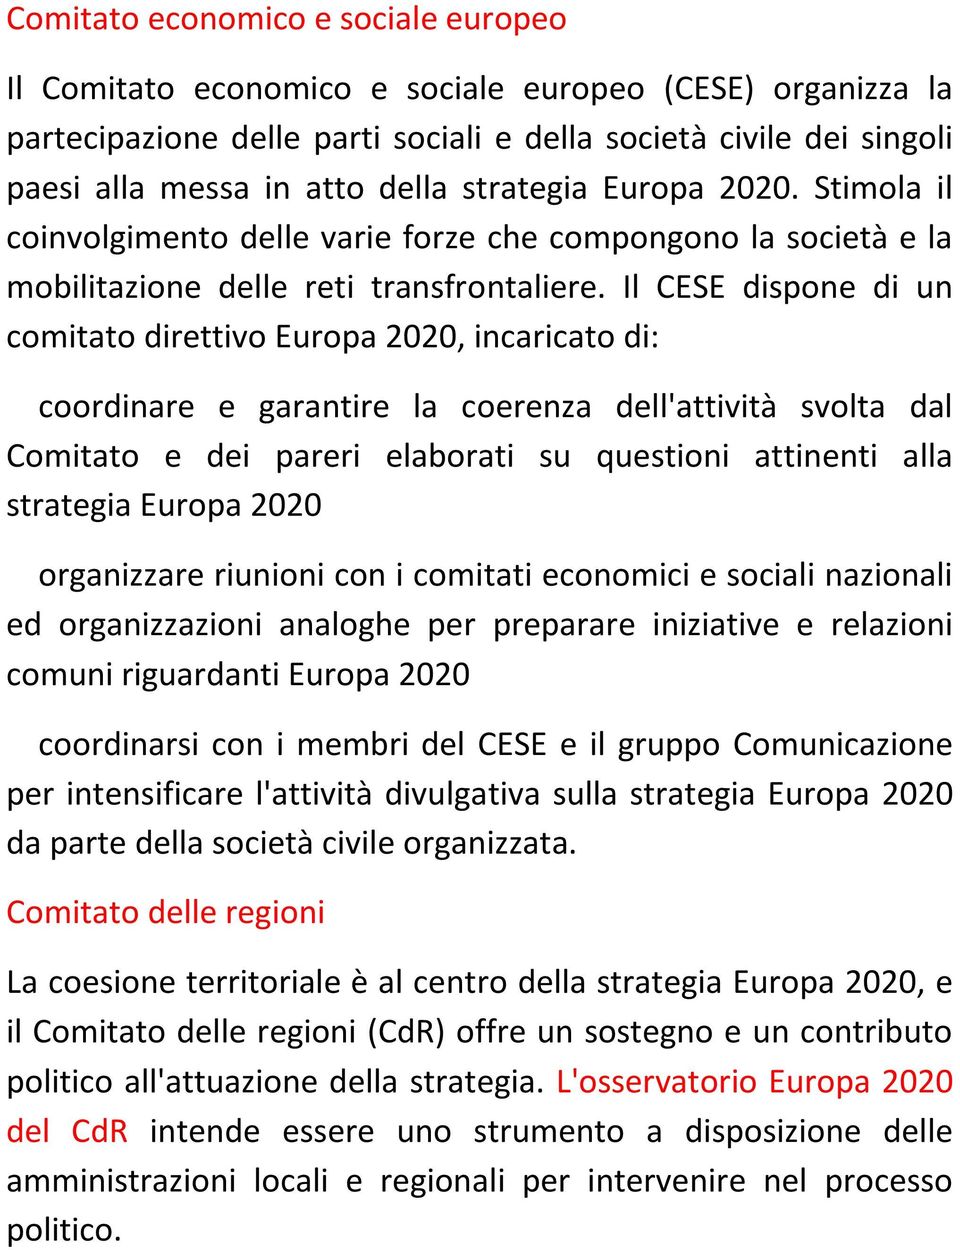 Il CESE dispone di un comitato direttivo Europa 2020, incaricato di: coordinare e garantire la coerenza dell'attività svolta dal Comitato e dei pareri elaborati su questioni attinenti alla strategia